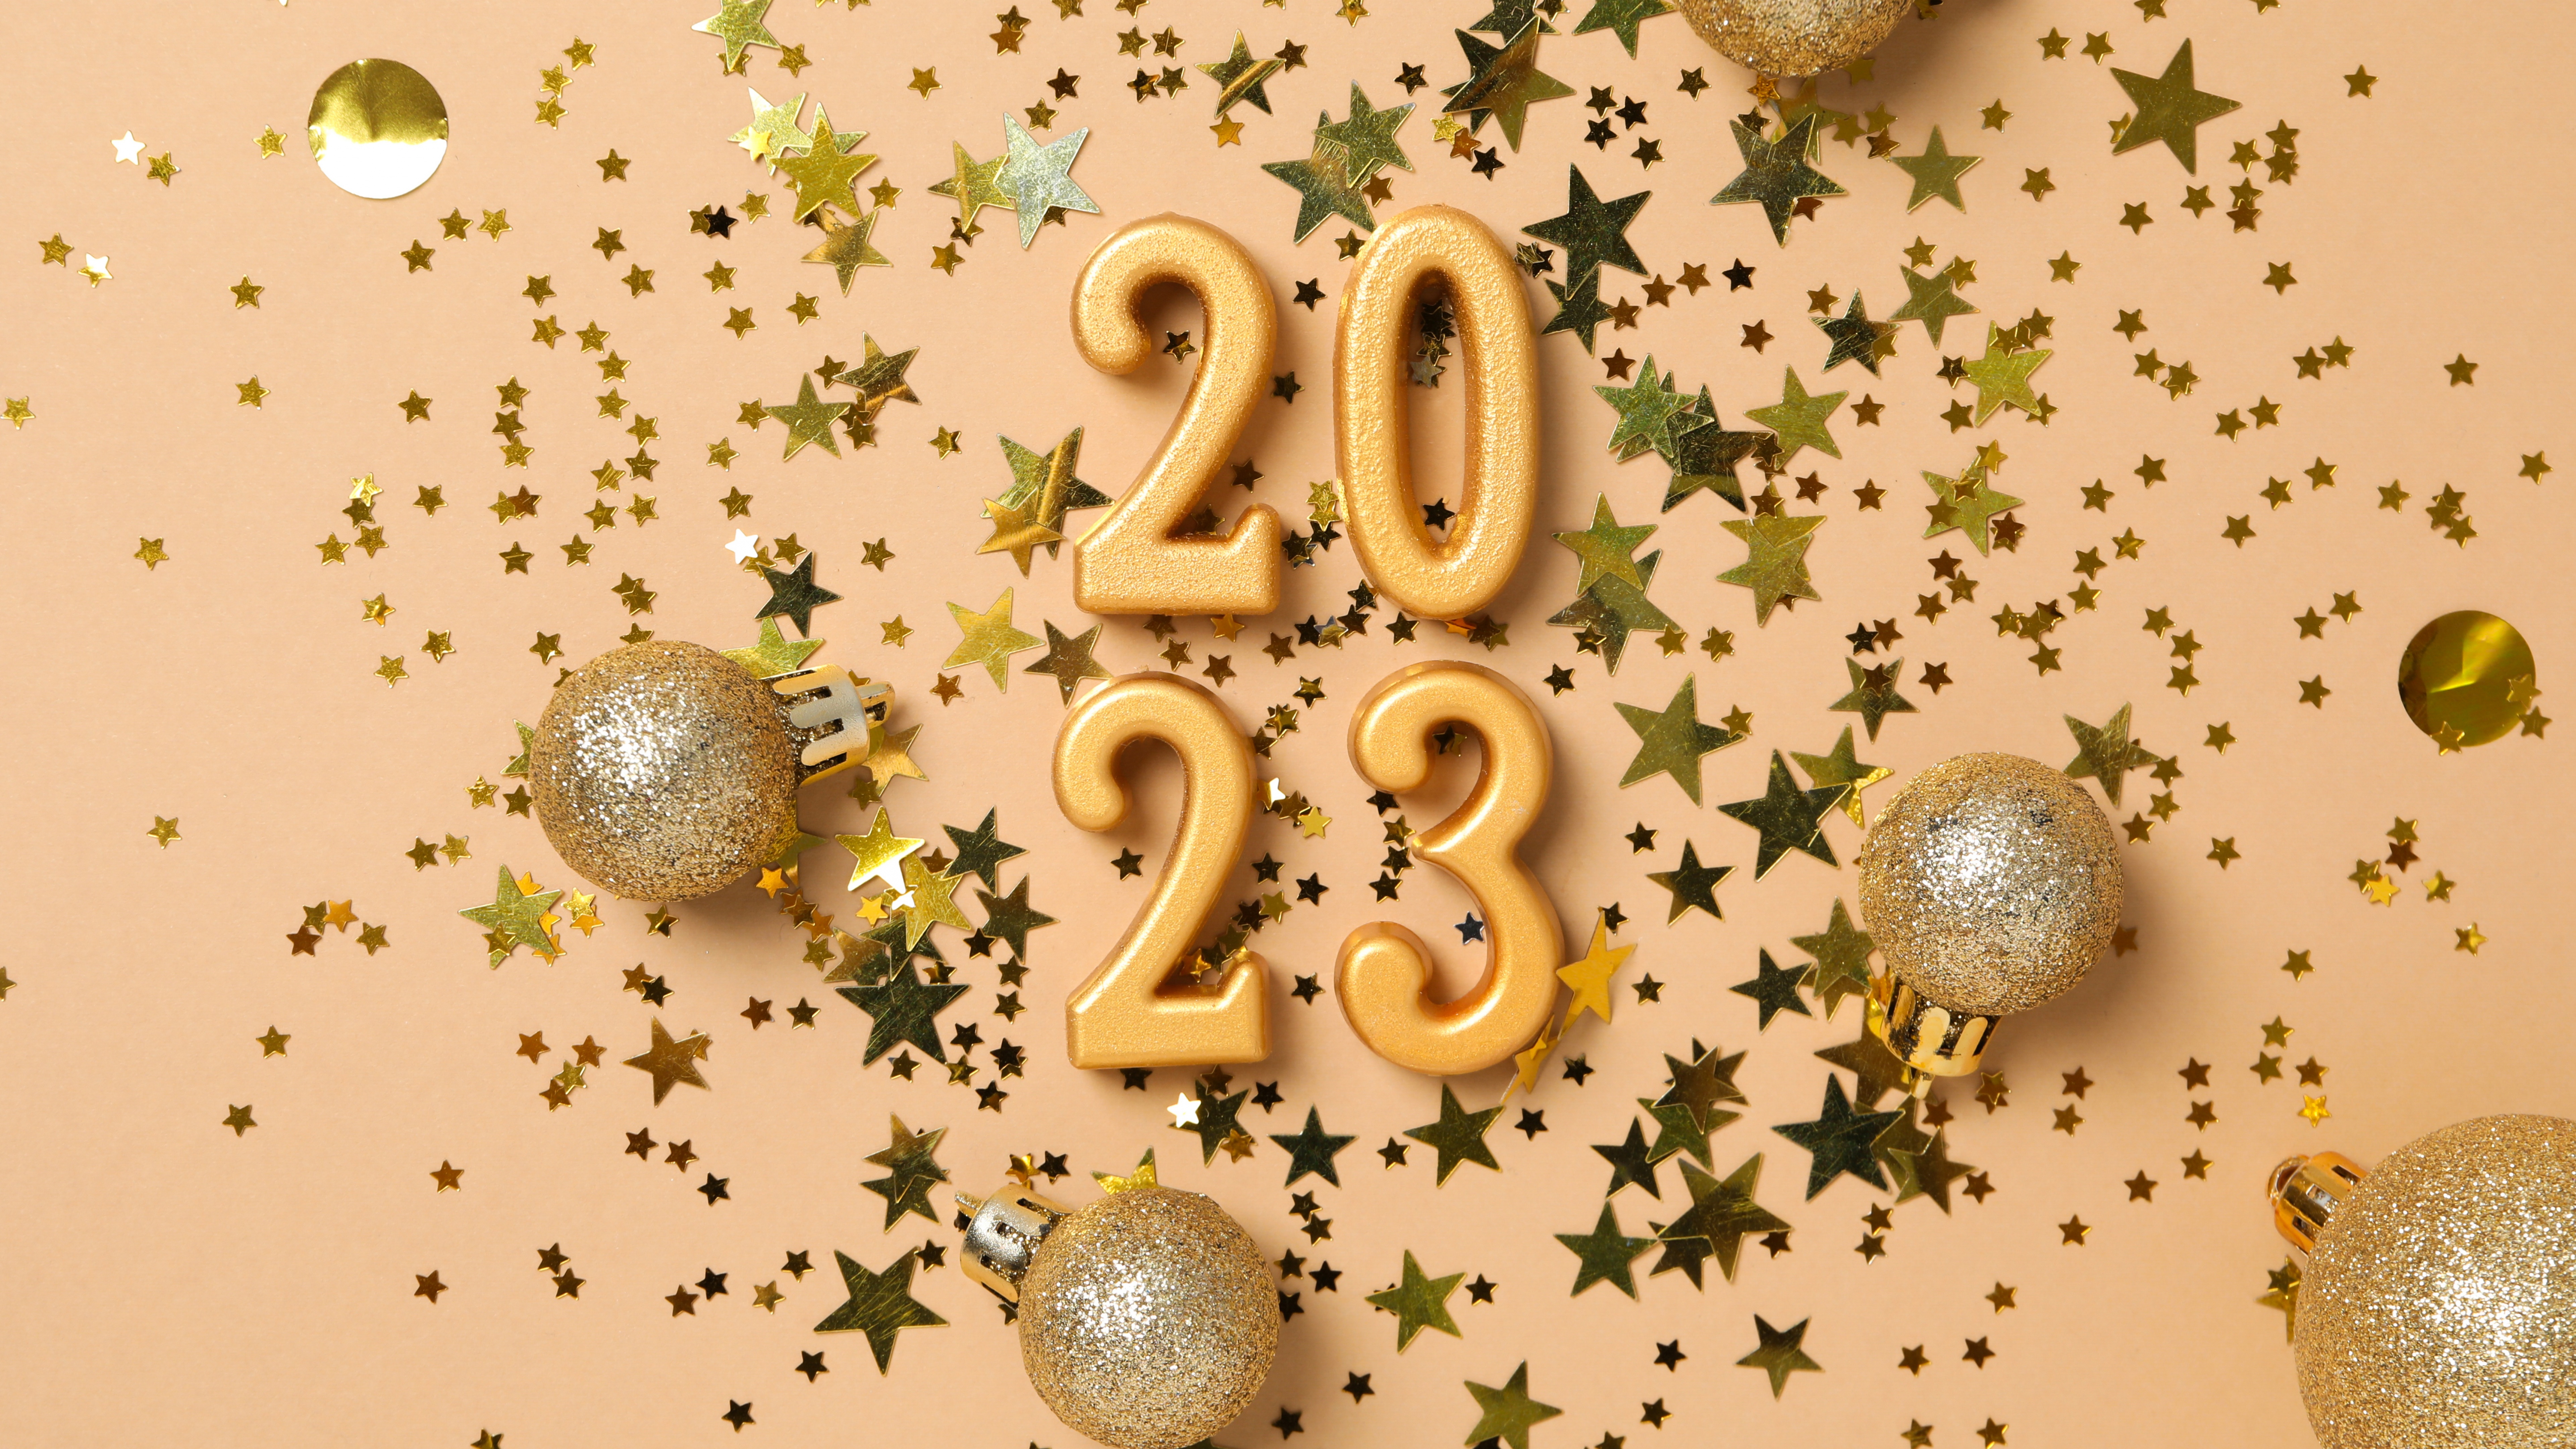 Hình nền đón năm mới 2024 sẽ cho bạn cảm giác yên tĩnh và đầy hy vọng khi xuân về. Những hình ảnh này sẽ khiến bạn cảm nhận được sự ấm áp trong gia đình, tình bạn và tình yêu tràn đầy ý nghĩa. Hãy tận hưởng những hình nền tết để đón chào năm mới và mang tết đến bạn bè của mình.